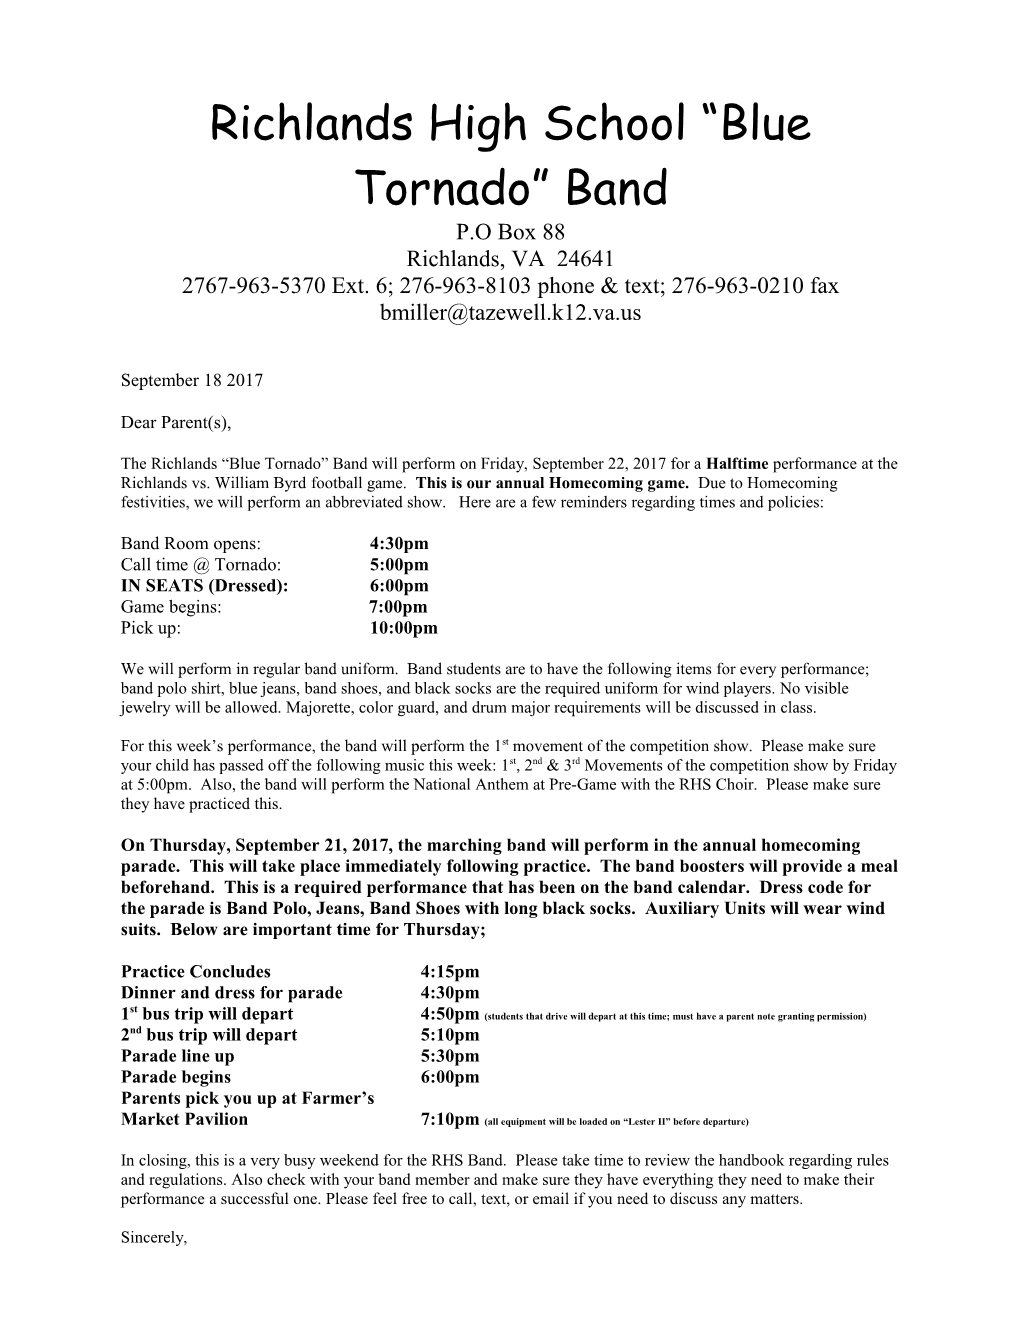 Richlands High School Blue Tornado Band